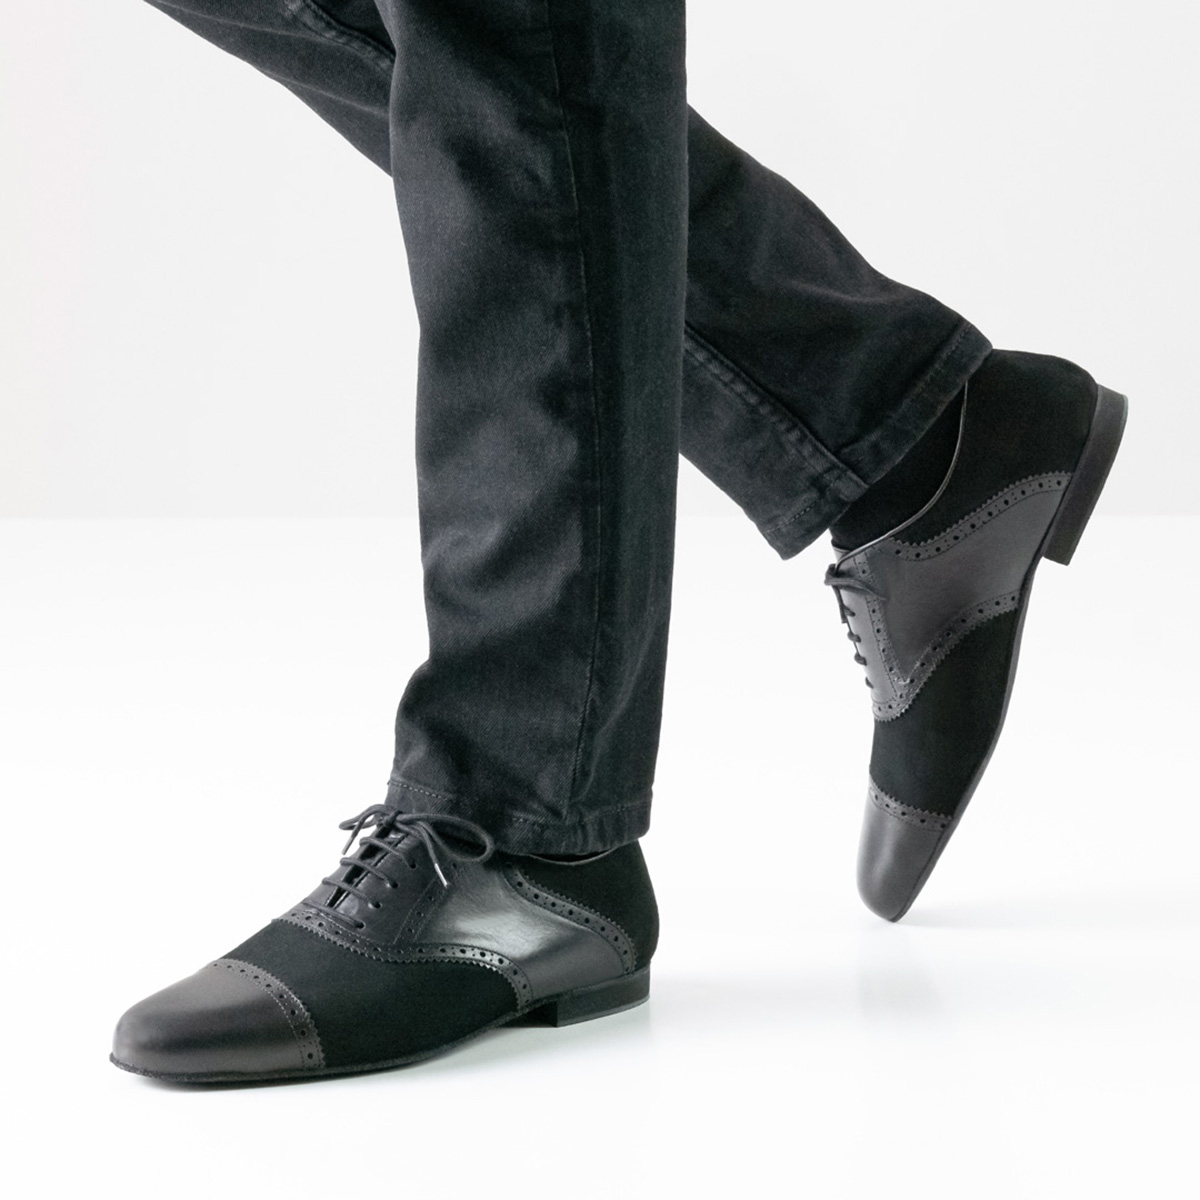 Werner Kern - Mens Dance Shoes 28047 - Black Leather/Nubuk